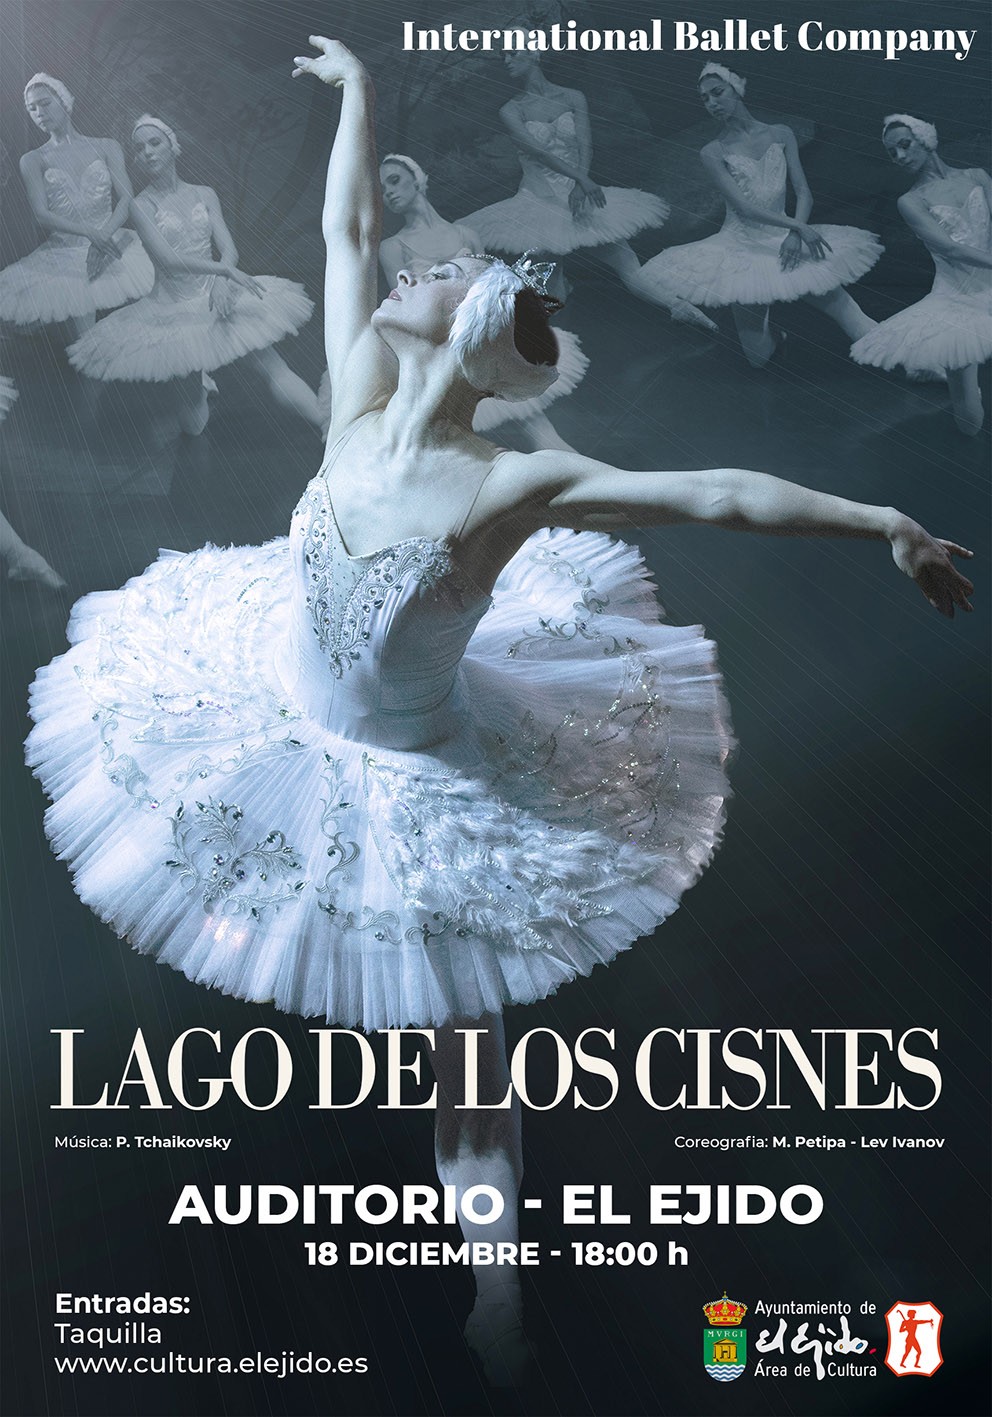 La International Ballet Company llega al Teatro Auditorio de El Ejido el próximo domingo 18 de diciembre